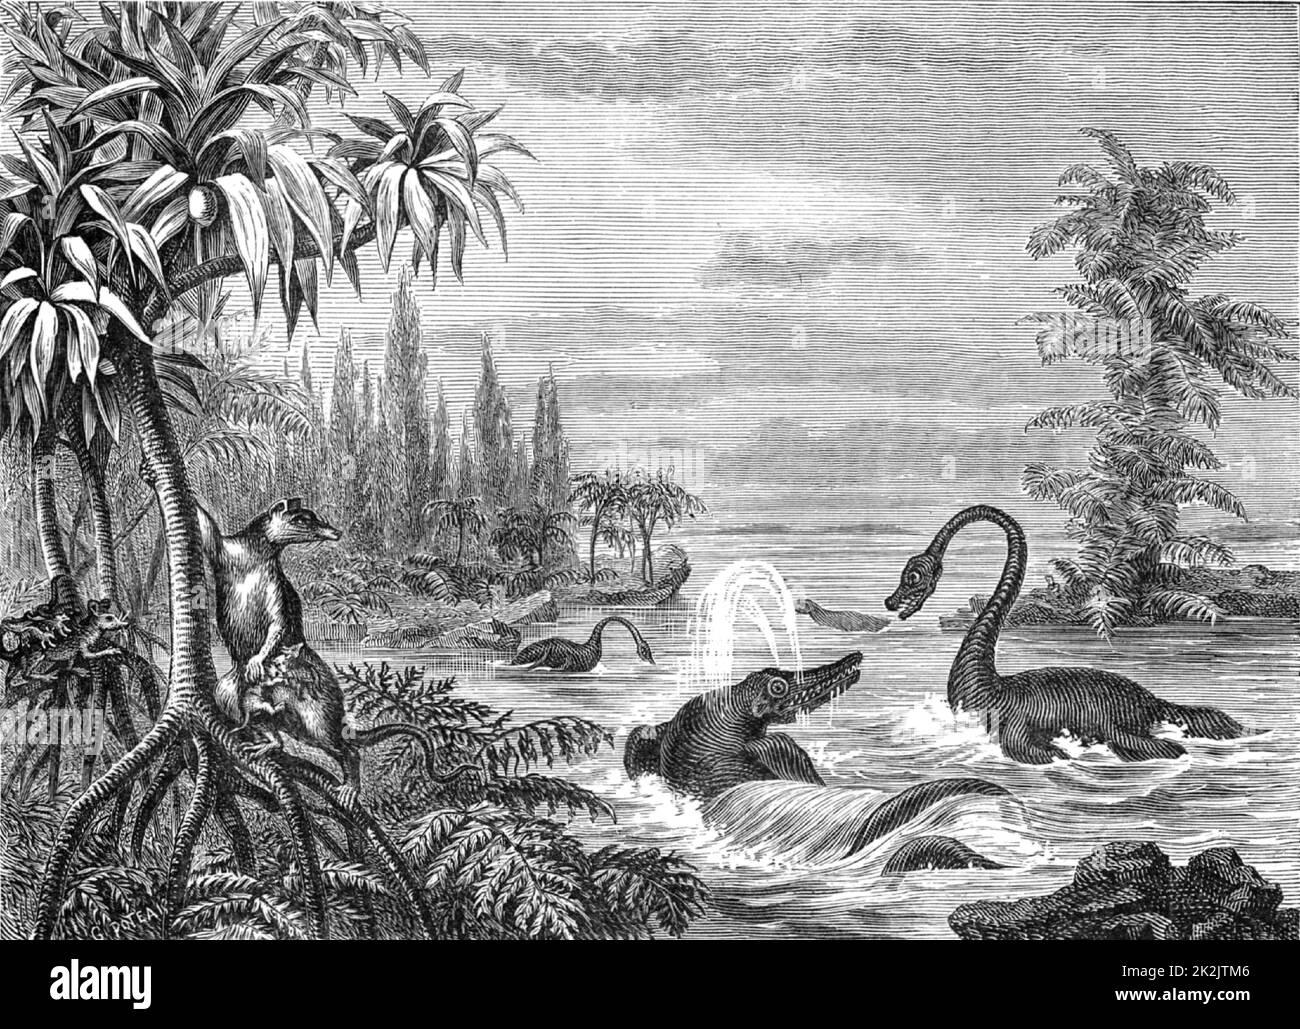 Escena durante el periodo Oolita Inferior mostrando reconstrucciones de Ichtiosaurus, Plesiosaurus y un Marsupial. De 'The Popular Encyclopedia' (Londres, 1888). Grabado. Foto de stock